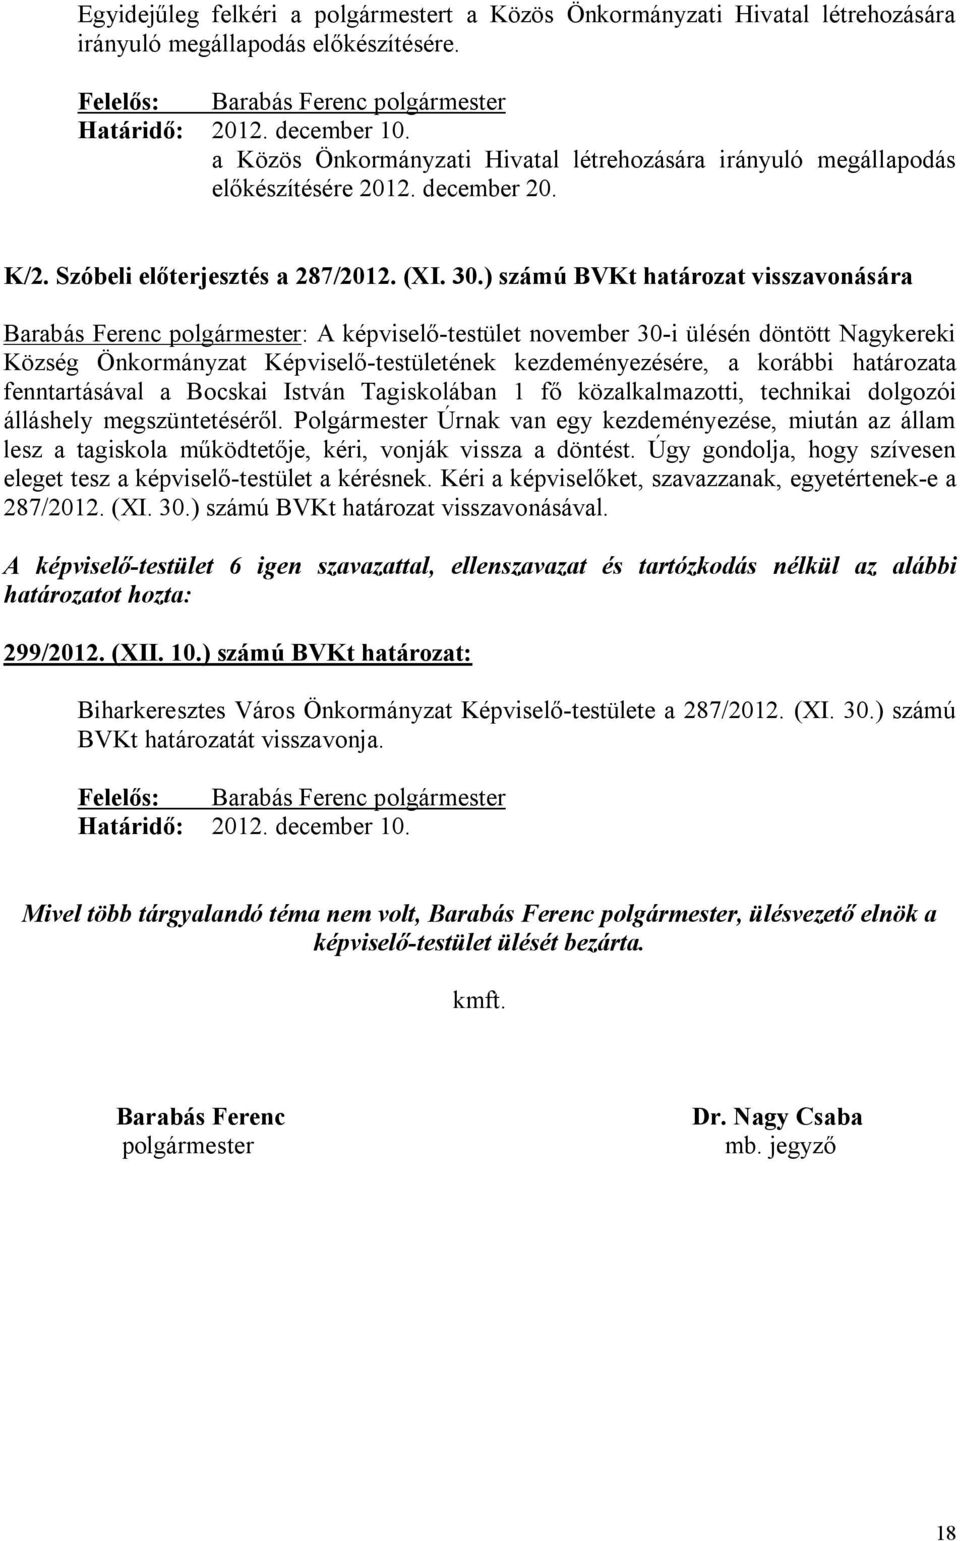 ) számú BVKt határozat visszavonására Barabás Ferenc polgármester: A képviselő-testület november 30-i ülésén döntött Nagykereki Község Önkormányzat Képviselő-testületének kezdeményezésére, a korábbi